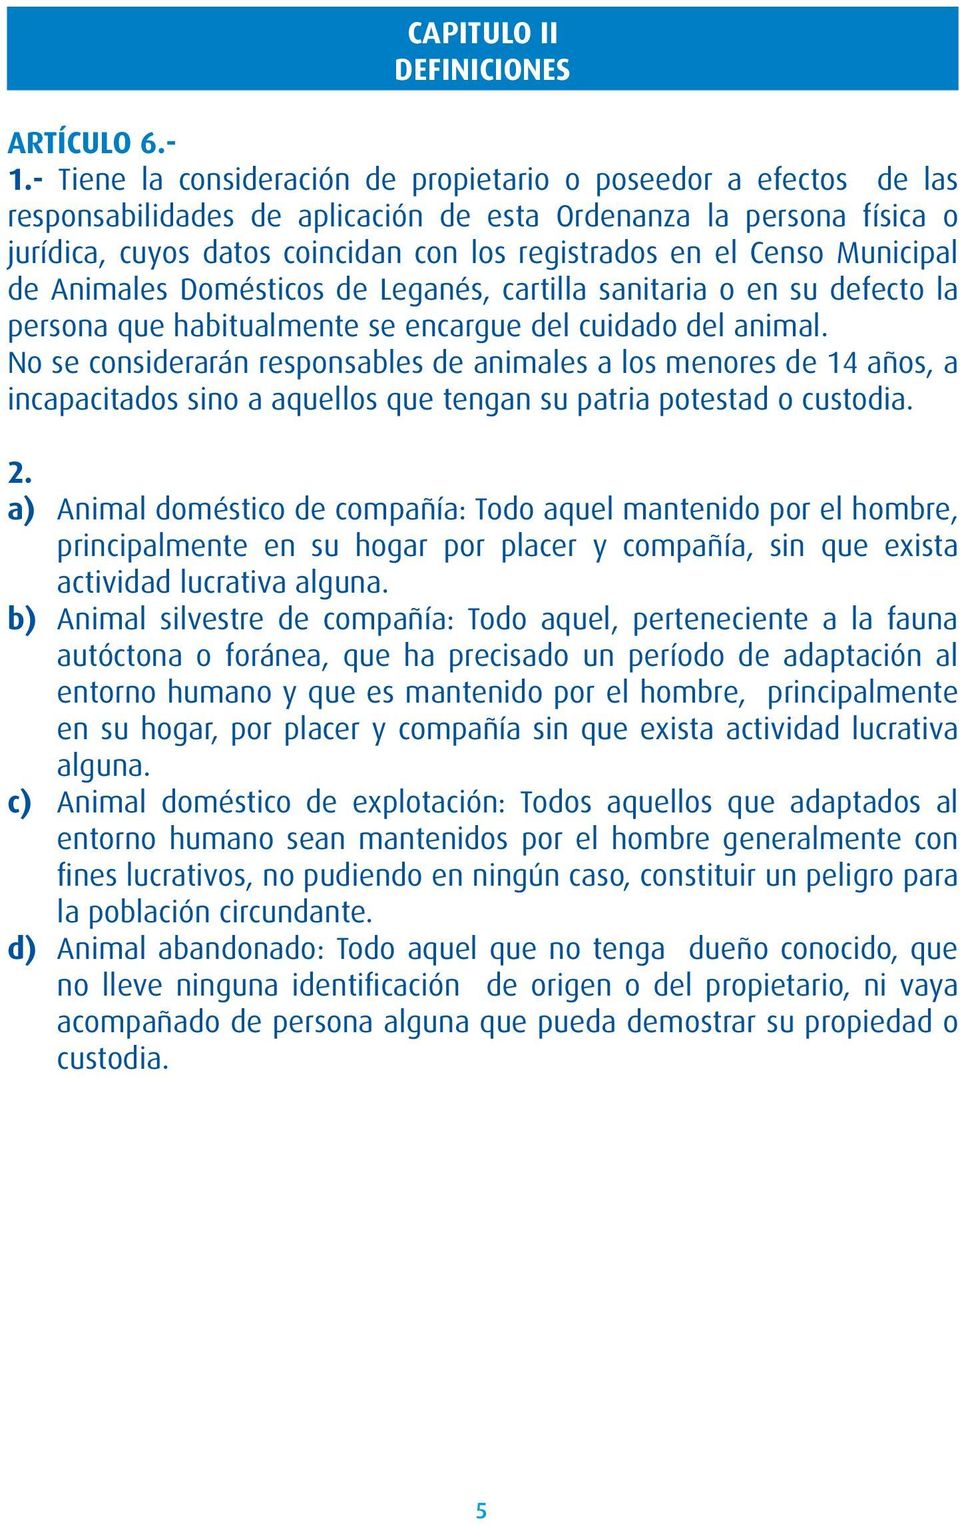 Censo Municipal de Animales Domésticos de Leganés, cartilla sanitaria o en su defecto la persona que habitualmente se encargue del cuidado del animal.